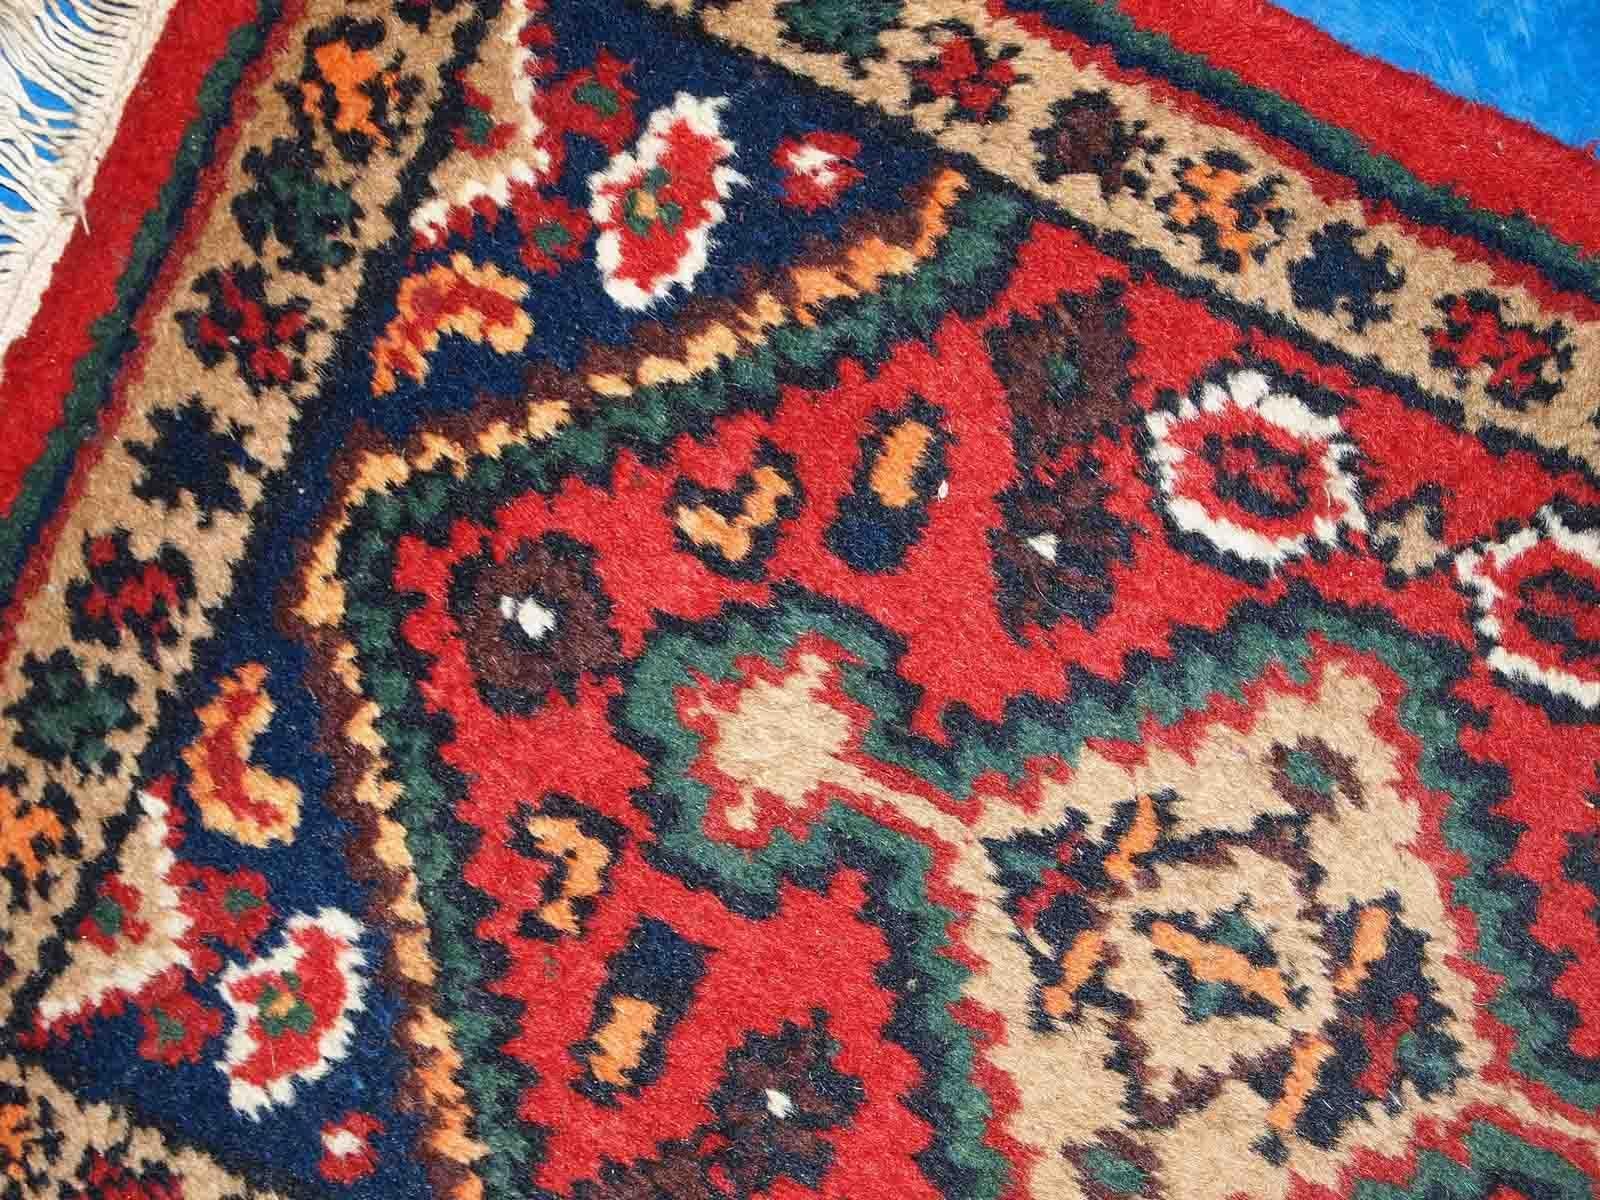 Handgefertigte Matte aus dem Nahen Osten in gutem Originalzustand. Der Teppich stammt aus dem Ende des 20. Jahrhunderts.

-zustand: original gut, 

-etwa: 1970er Jahre,

-größe: 1,3' x 2' (41cm x 61cm),

-material: Wolle,

-herkunftsland: